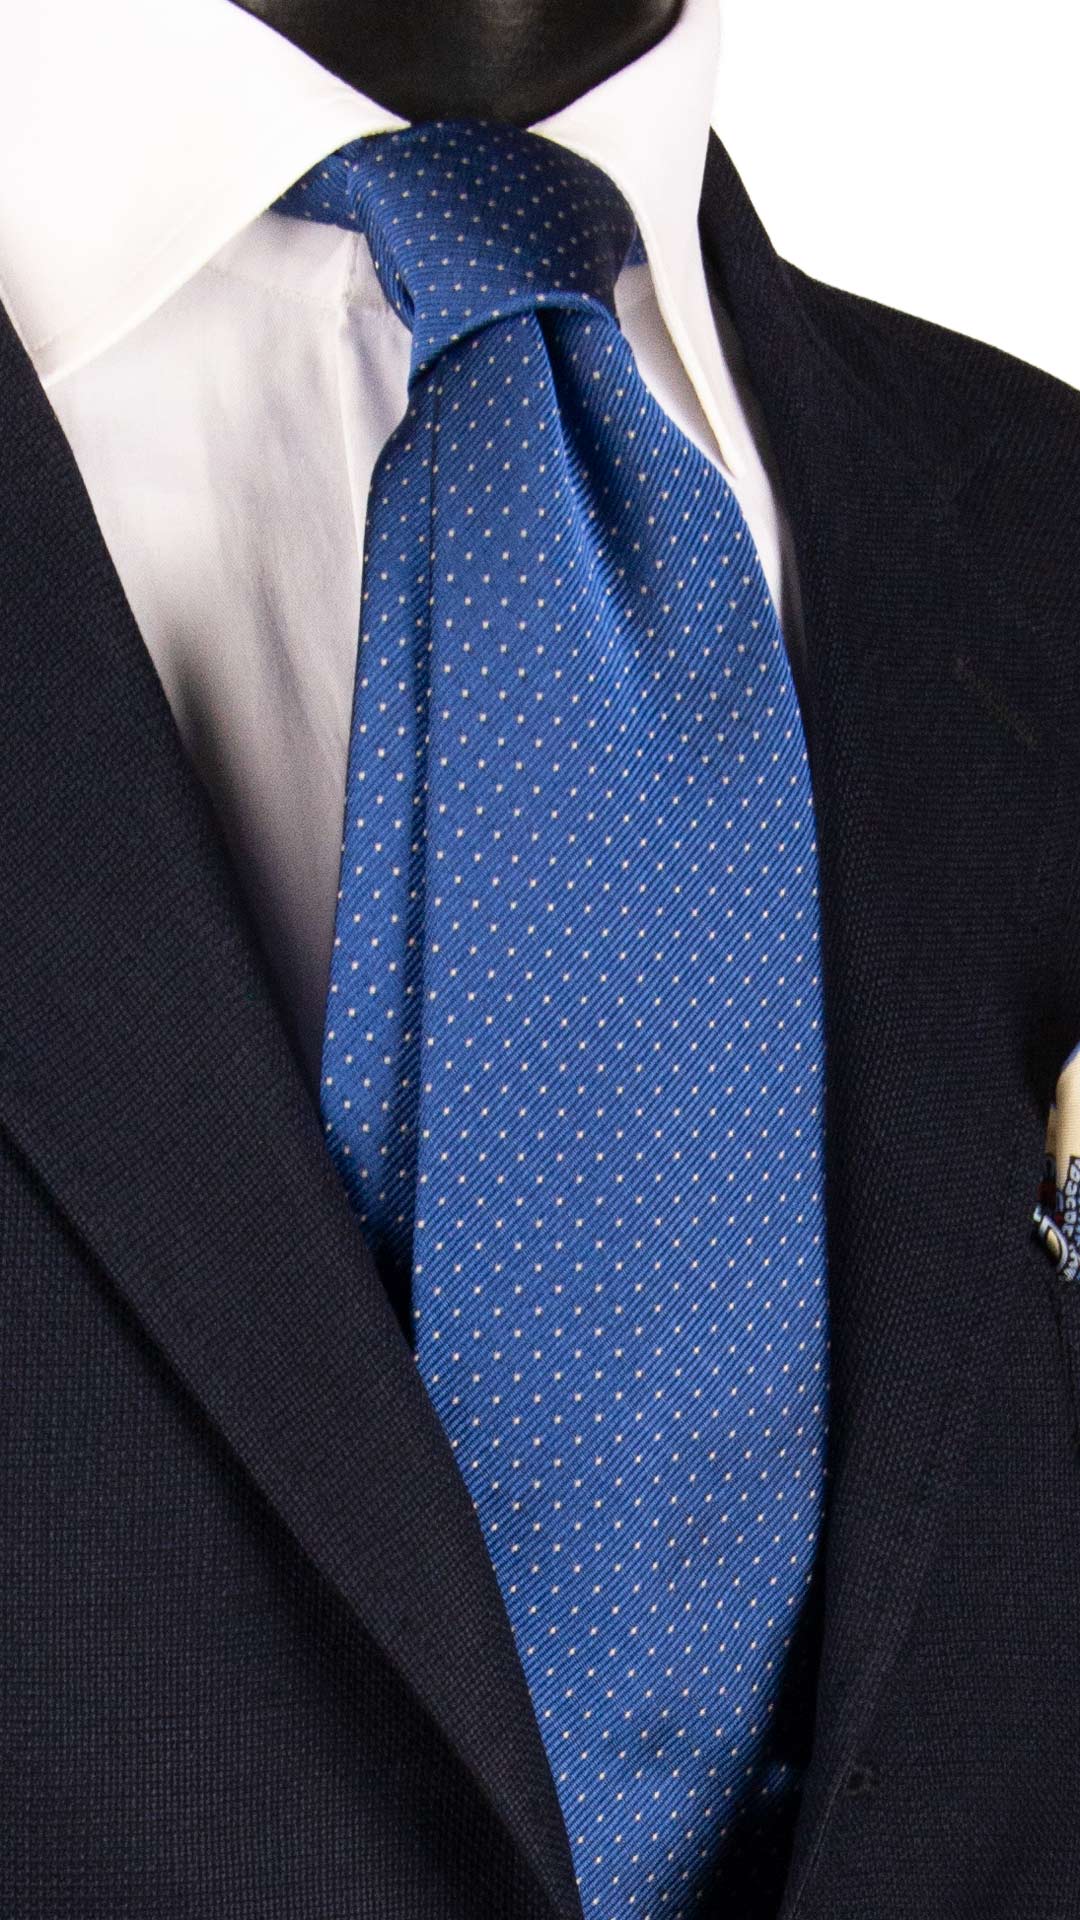 Cravatta Sette Pieghe di Seta Lisca di Pesce Marrone Blu 7P478 Made in Italy Graffeo Cravatte